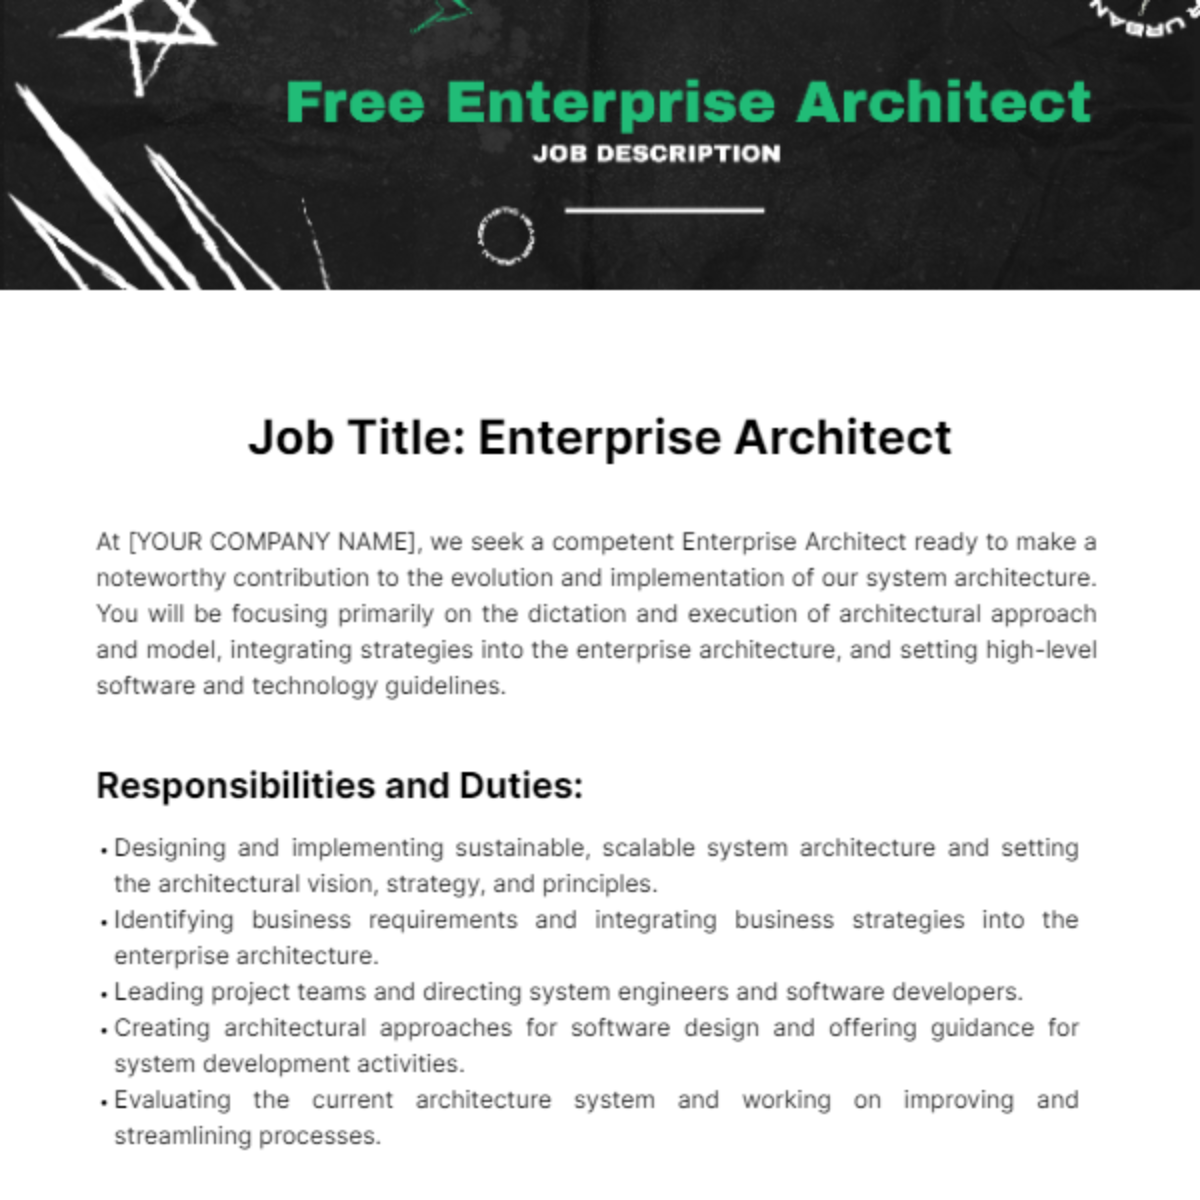 Enterprise Architect Job Description Template